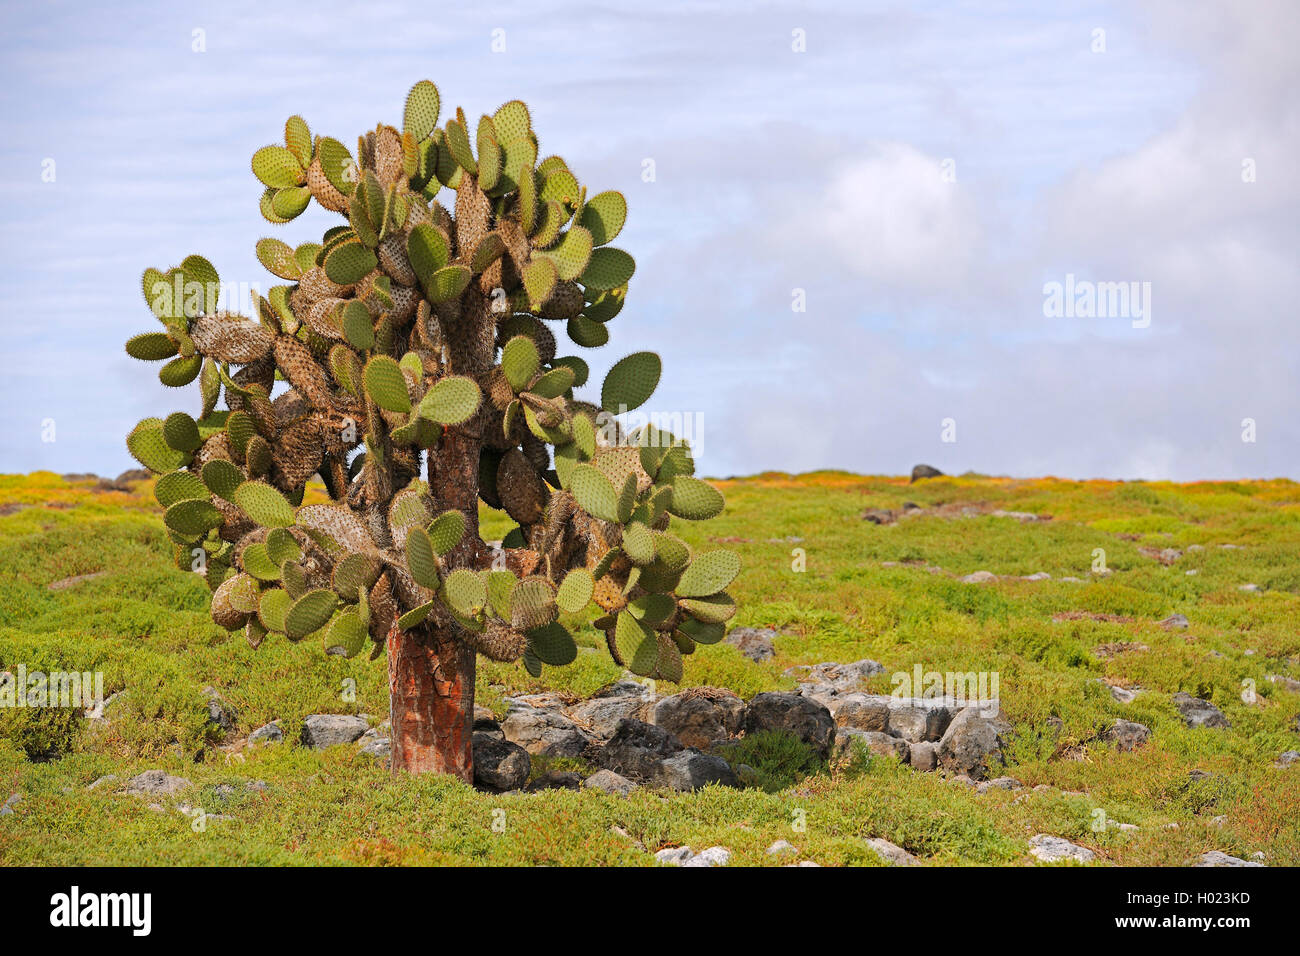 Galapagos-Feigenkaktus, Galapagosfeigenkaktus, Galapagos-Opuntie, Galapagosopuntie (Opuntia echios), Baumopuntie, Ecuador, Galap Stock Photo